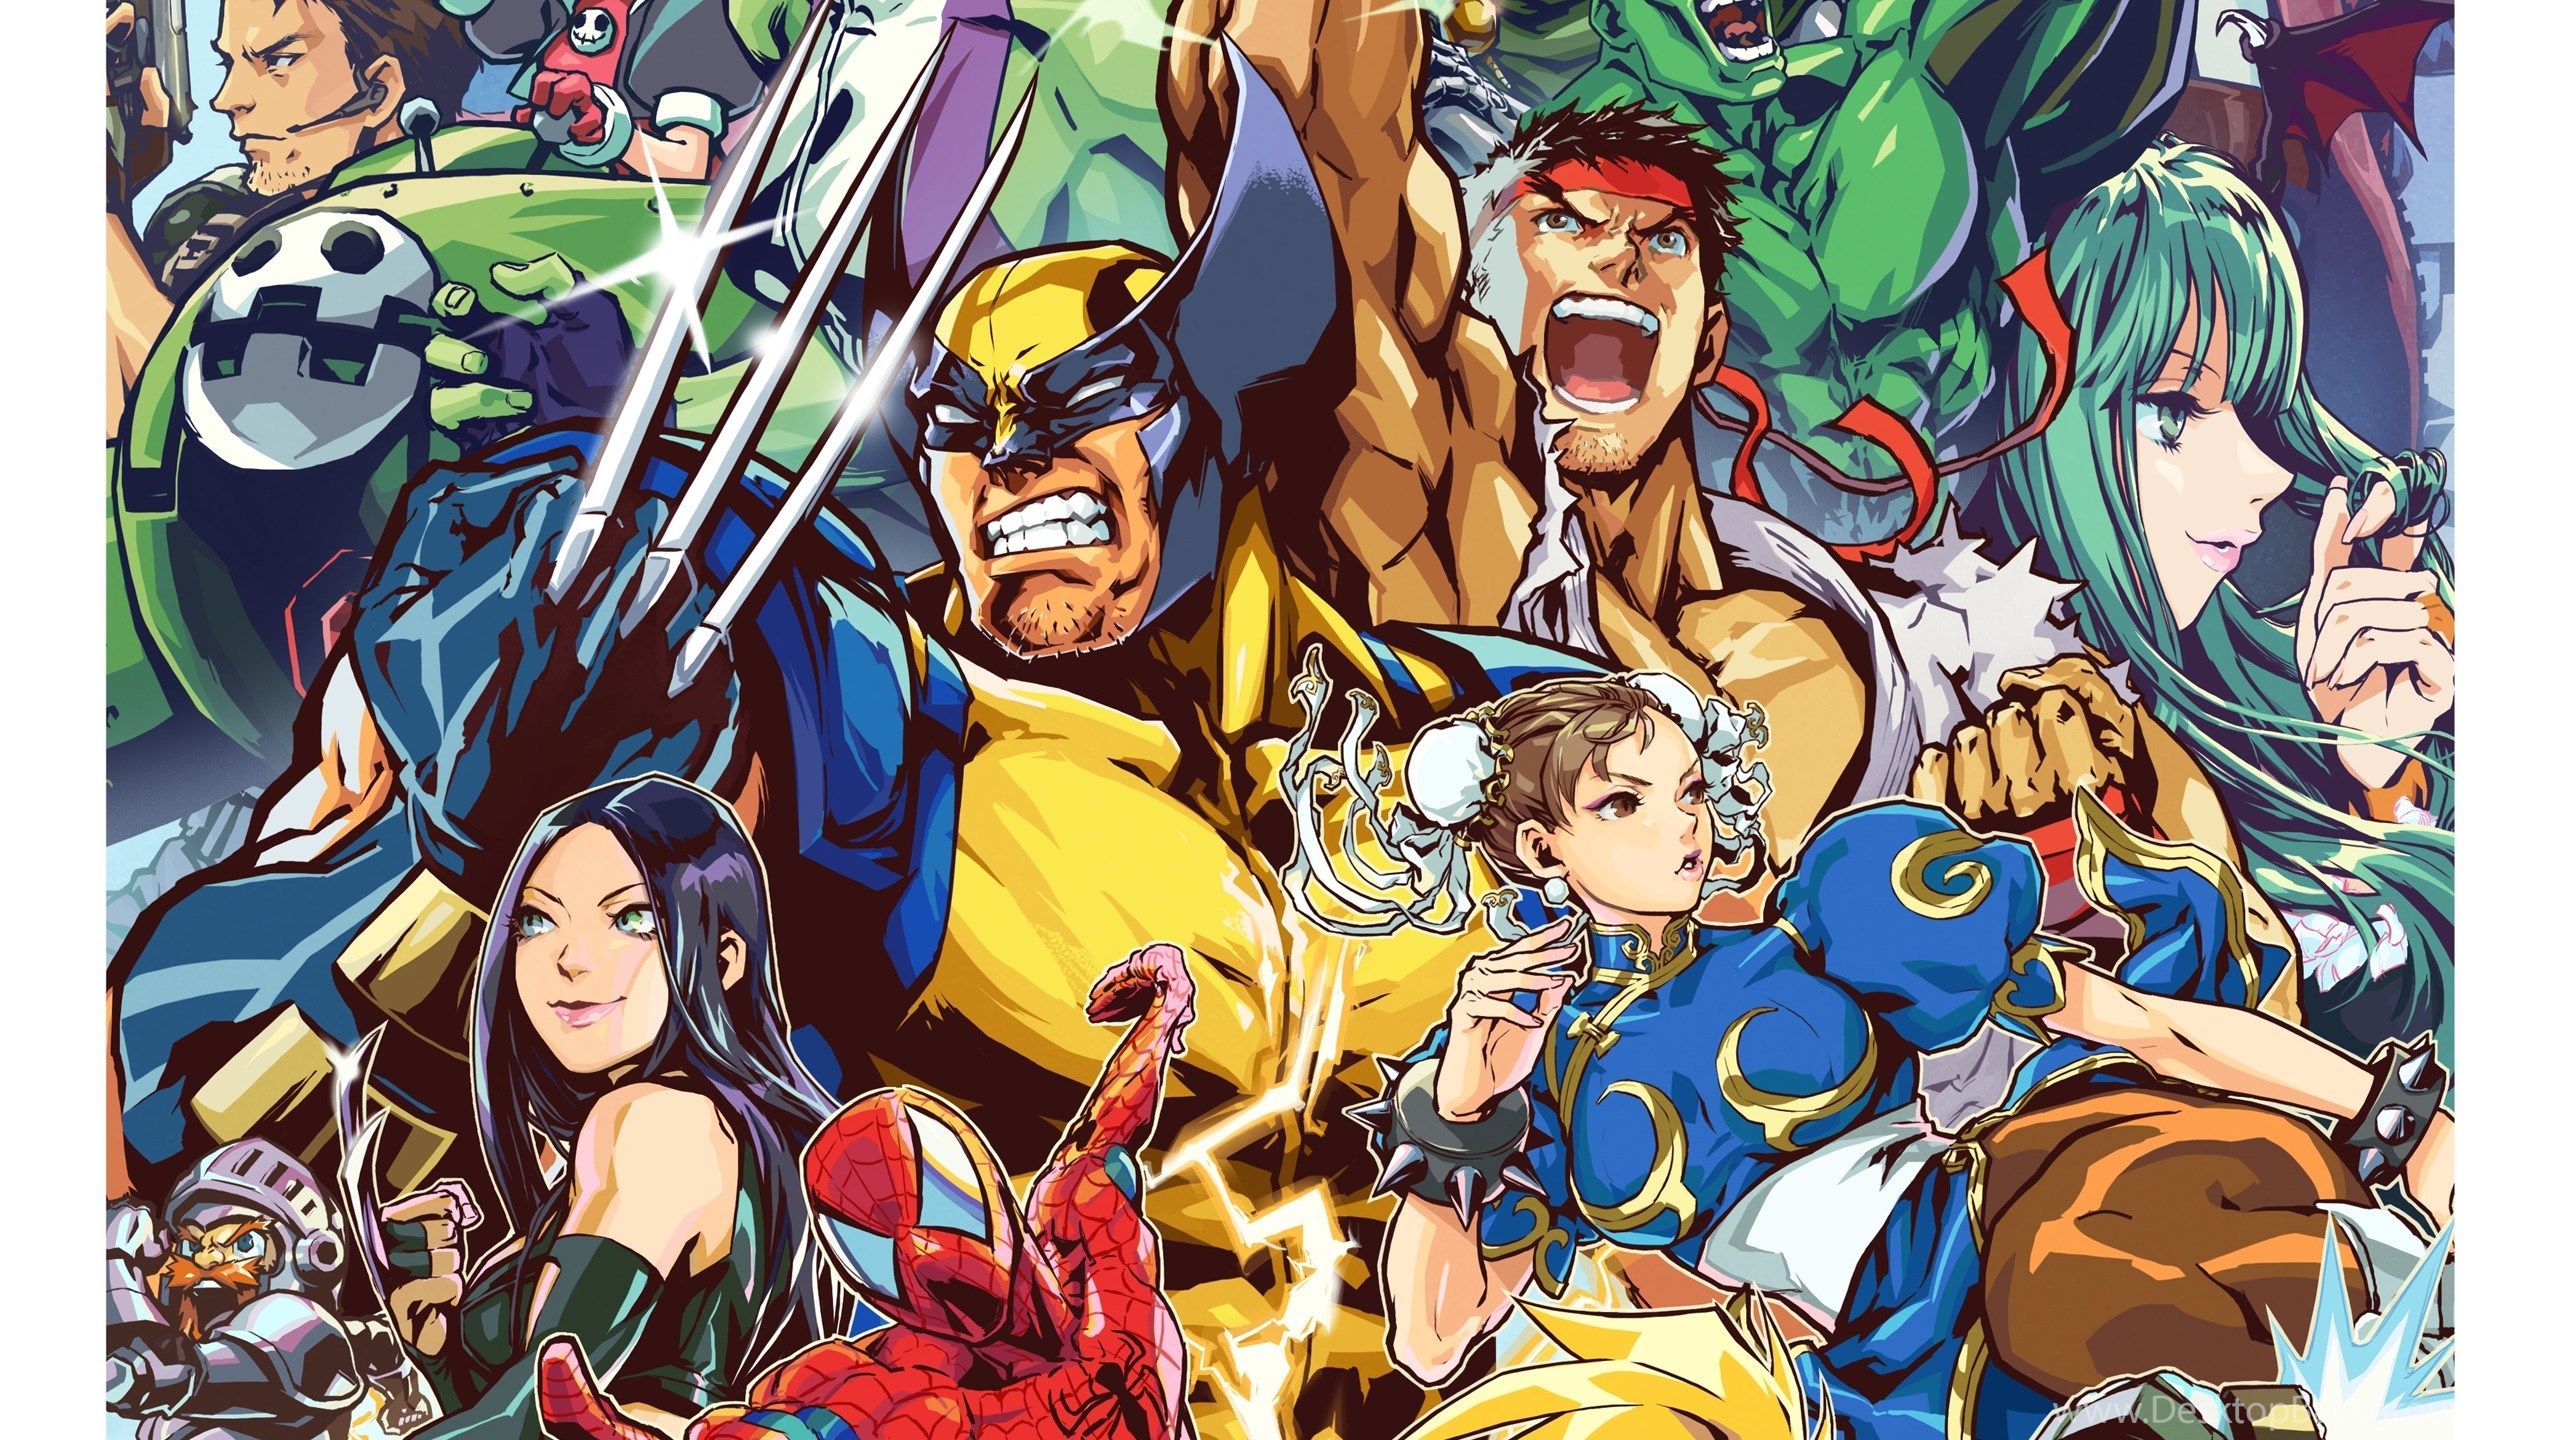 Marvel Vs. Capcom Wallpaper Free Marvel Vs. Capcom Background